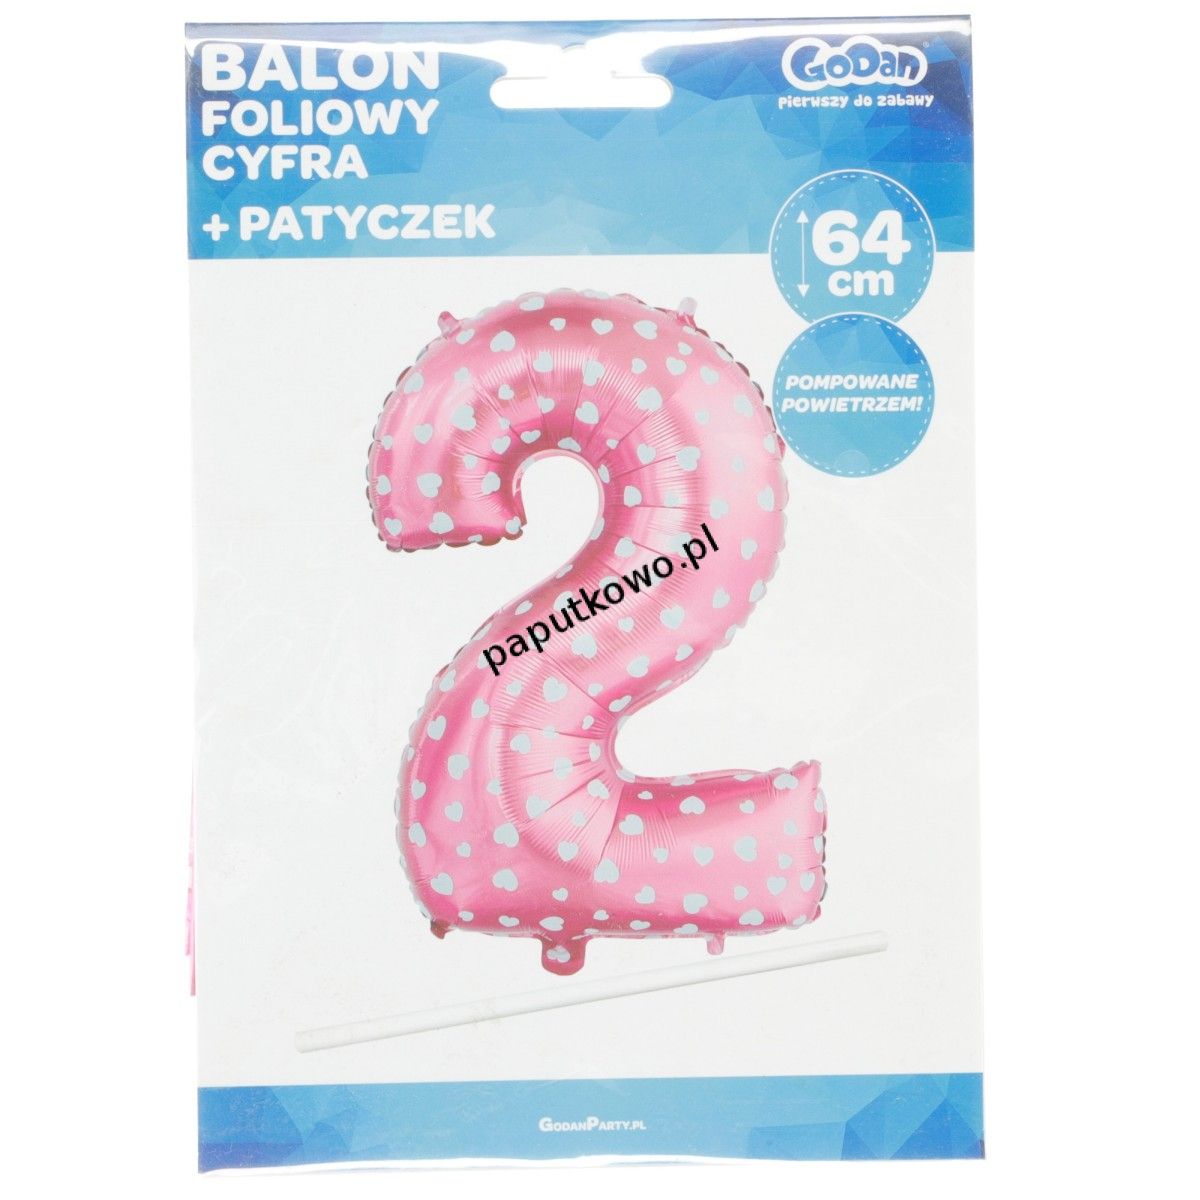 Balon foliowy Godan różowy cyfra 2 26 cali 26cal (hs-c26r2)